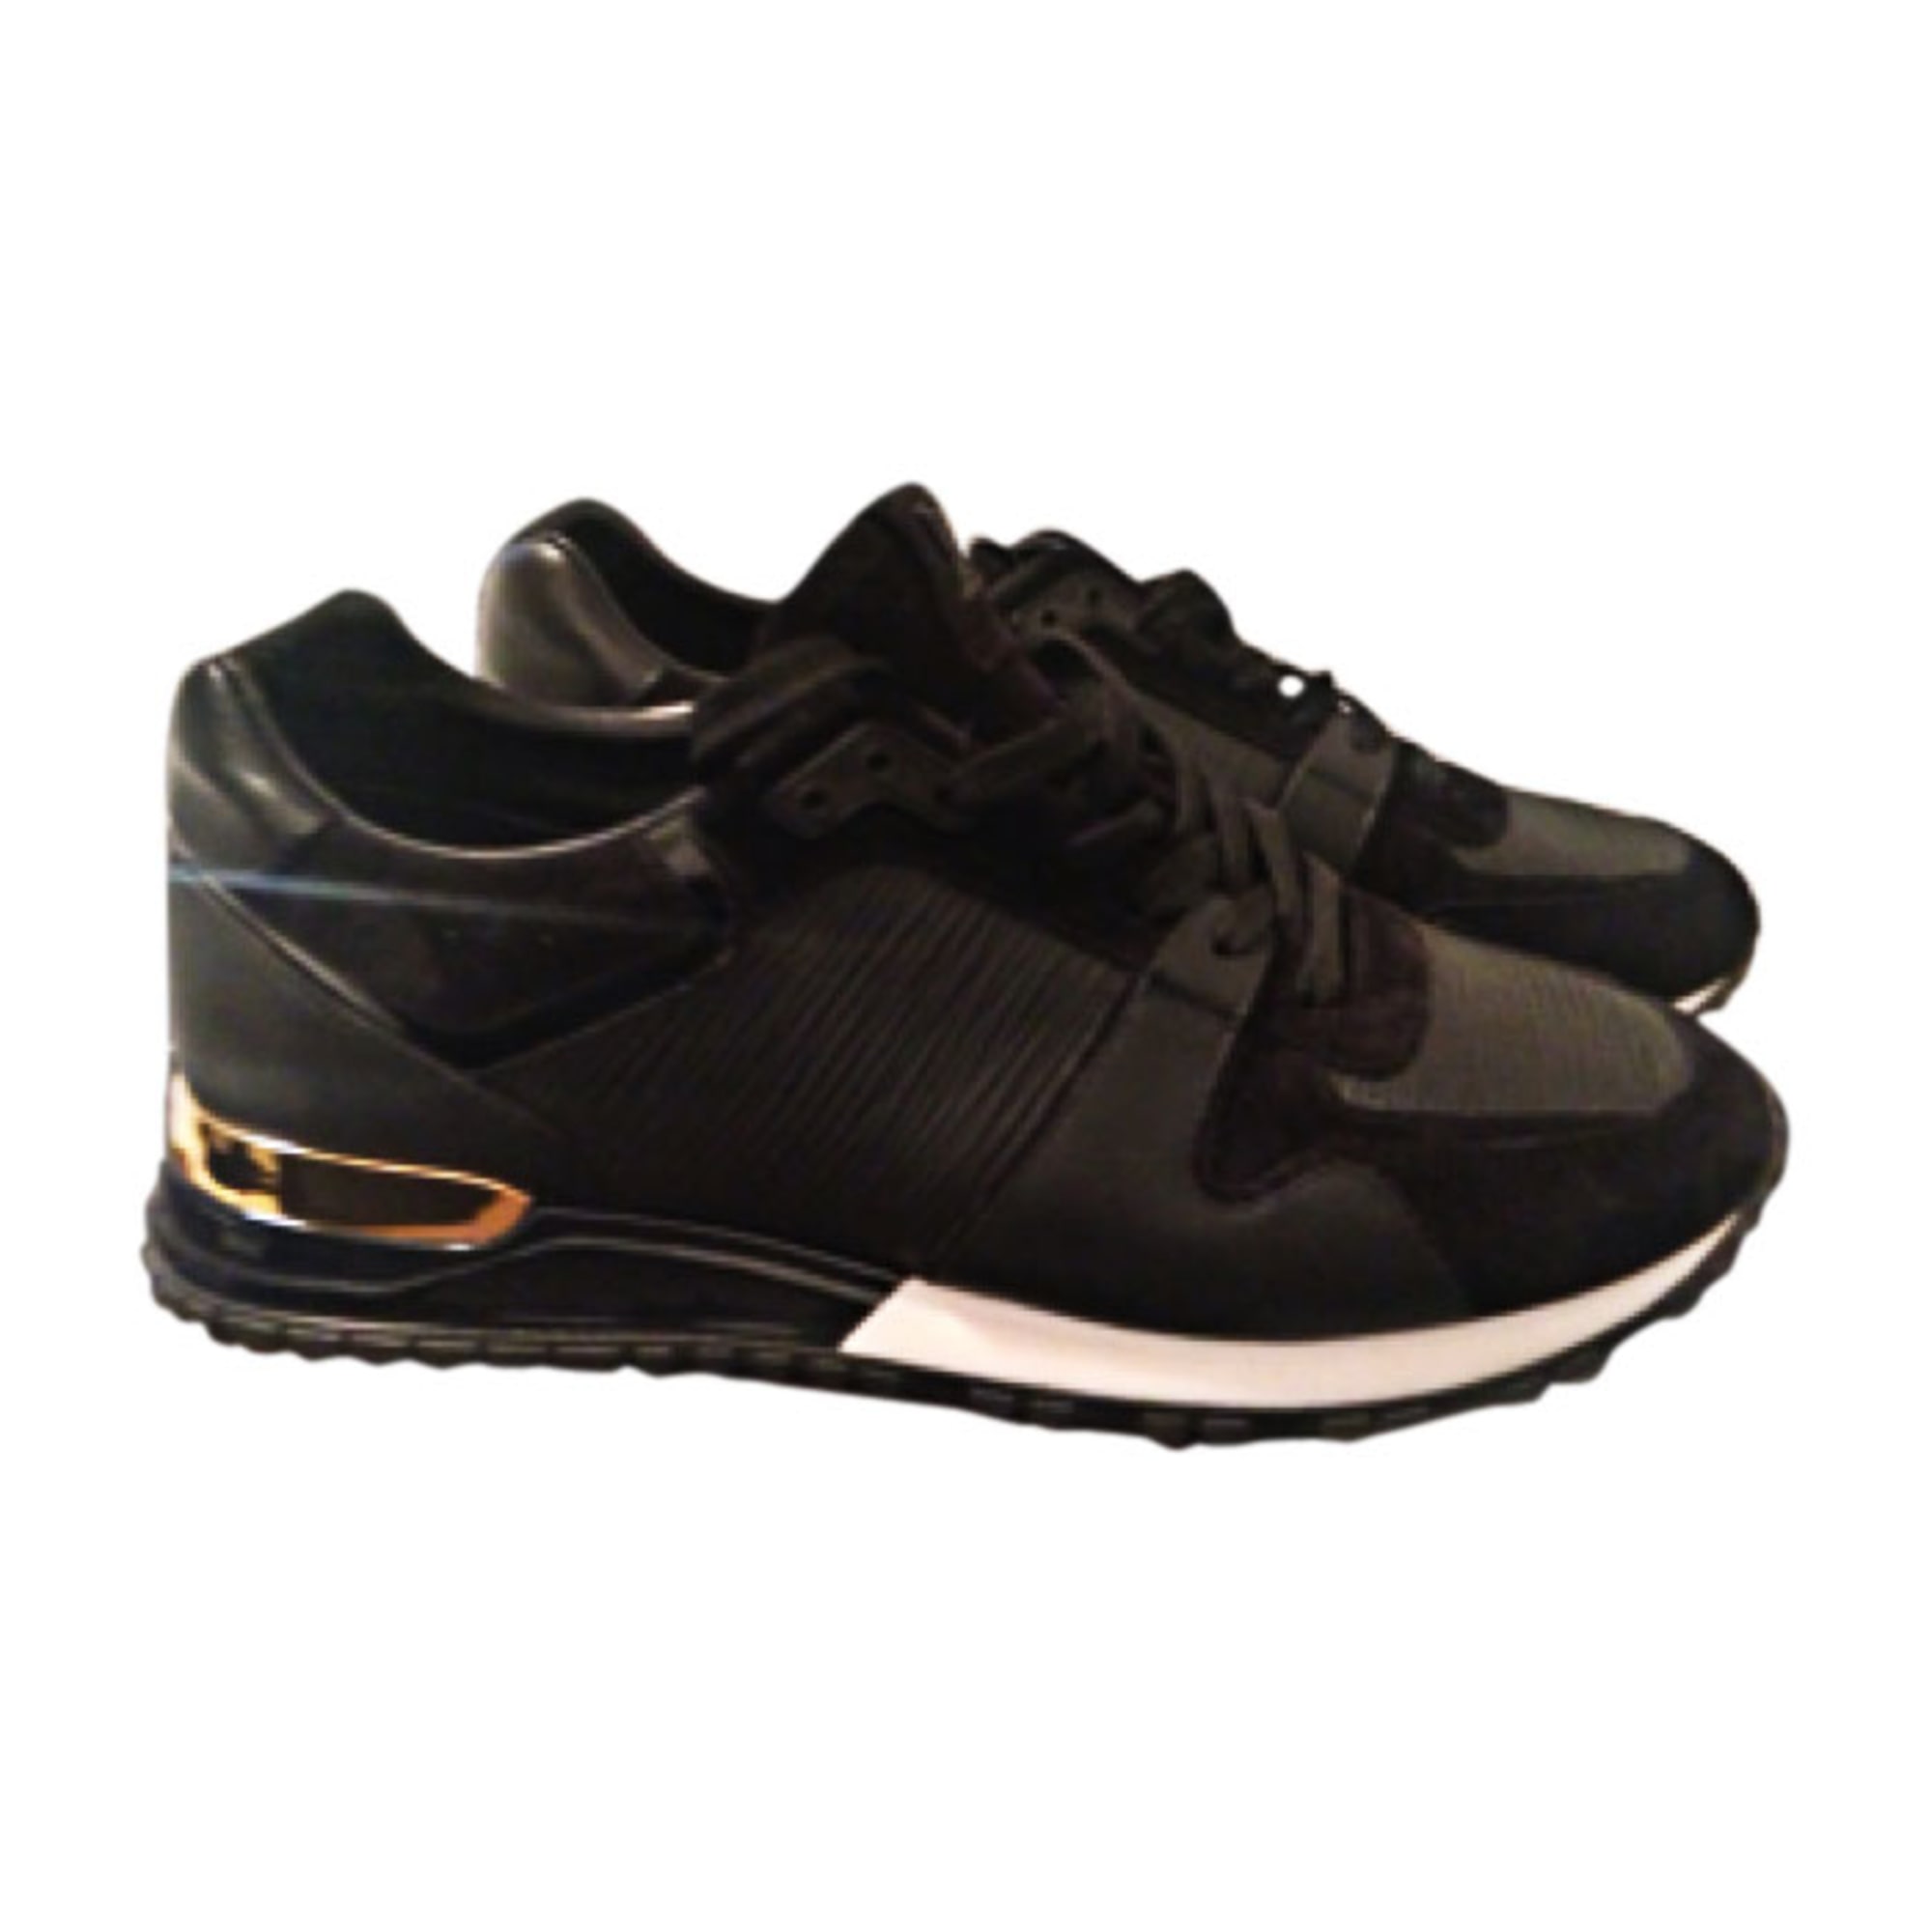 Rullesten Poleret Oversætte Run Away Sneaker Men Shoes LOUIS VUITTON ® | xn--90absbknhbvge.xn--p1ai:443